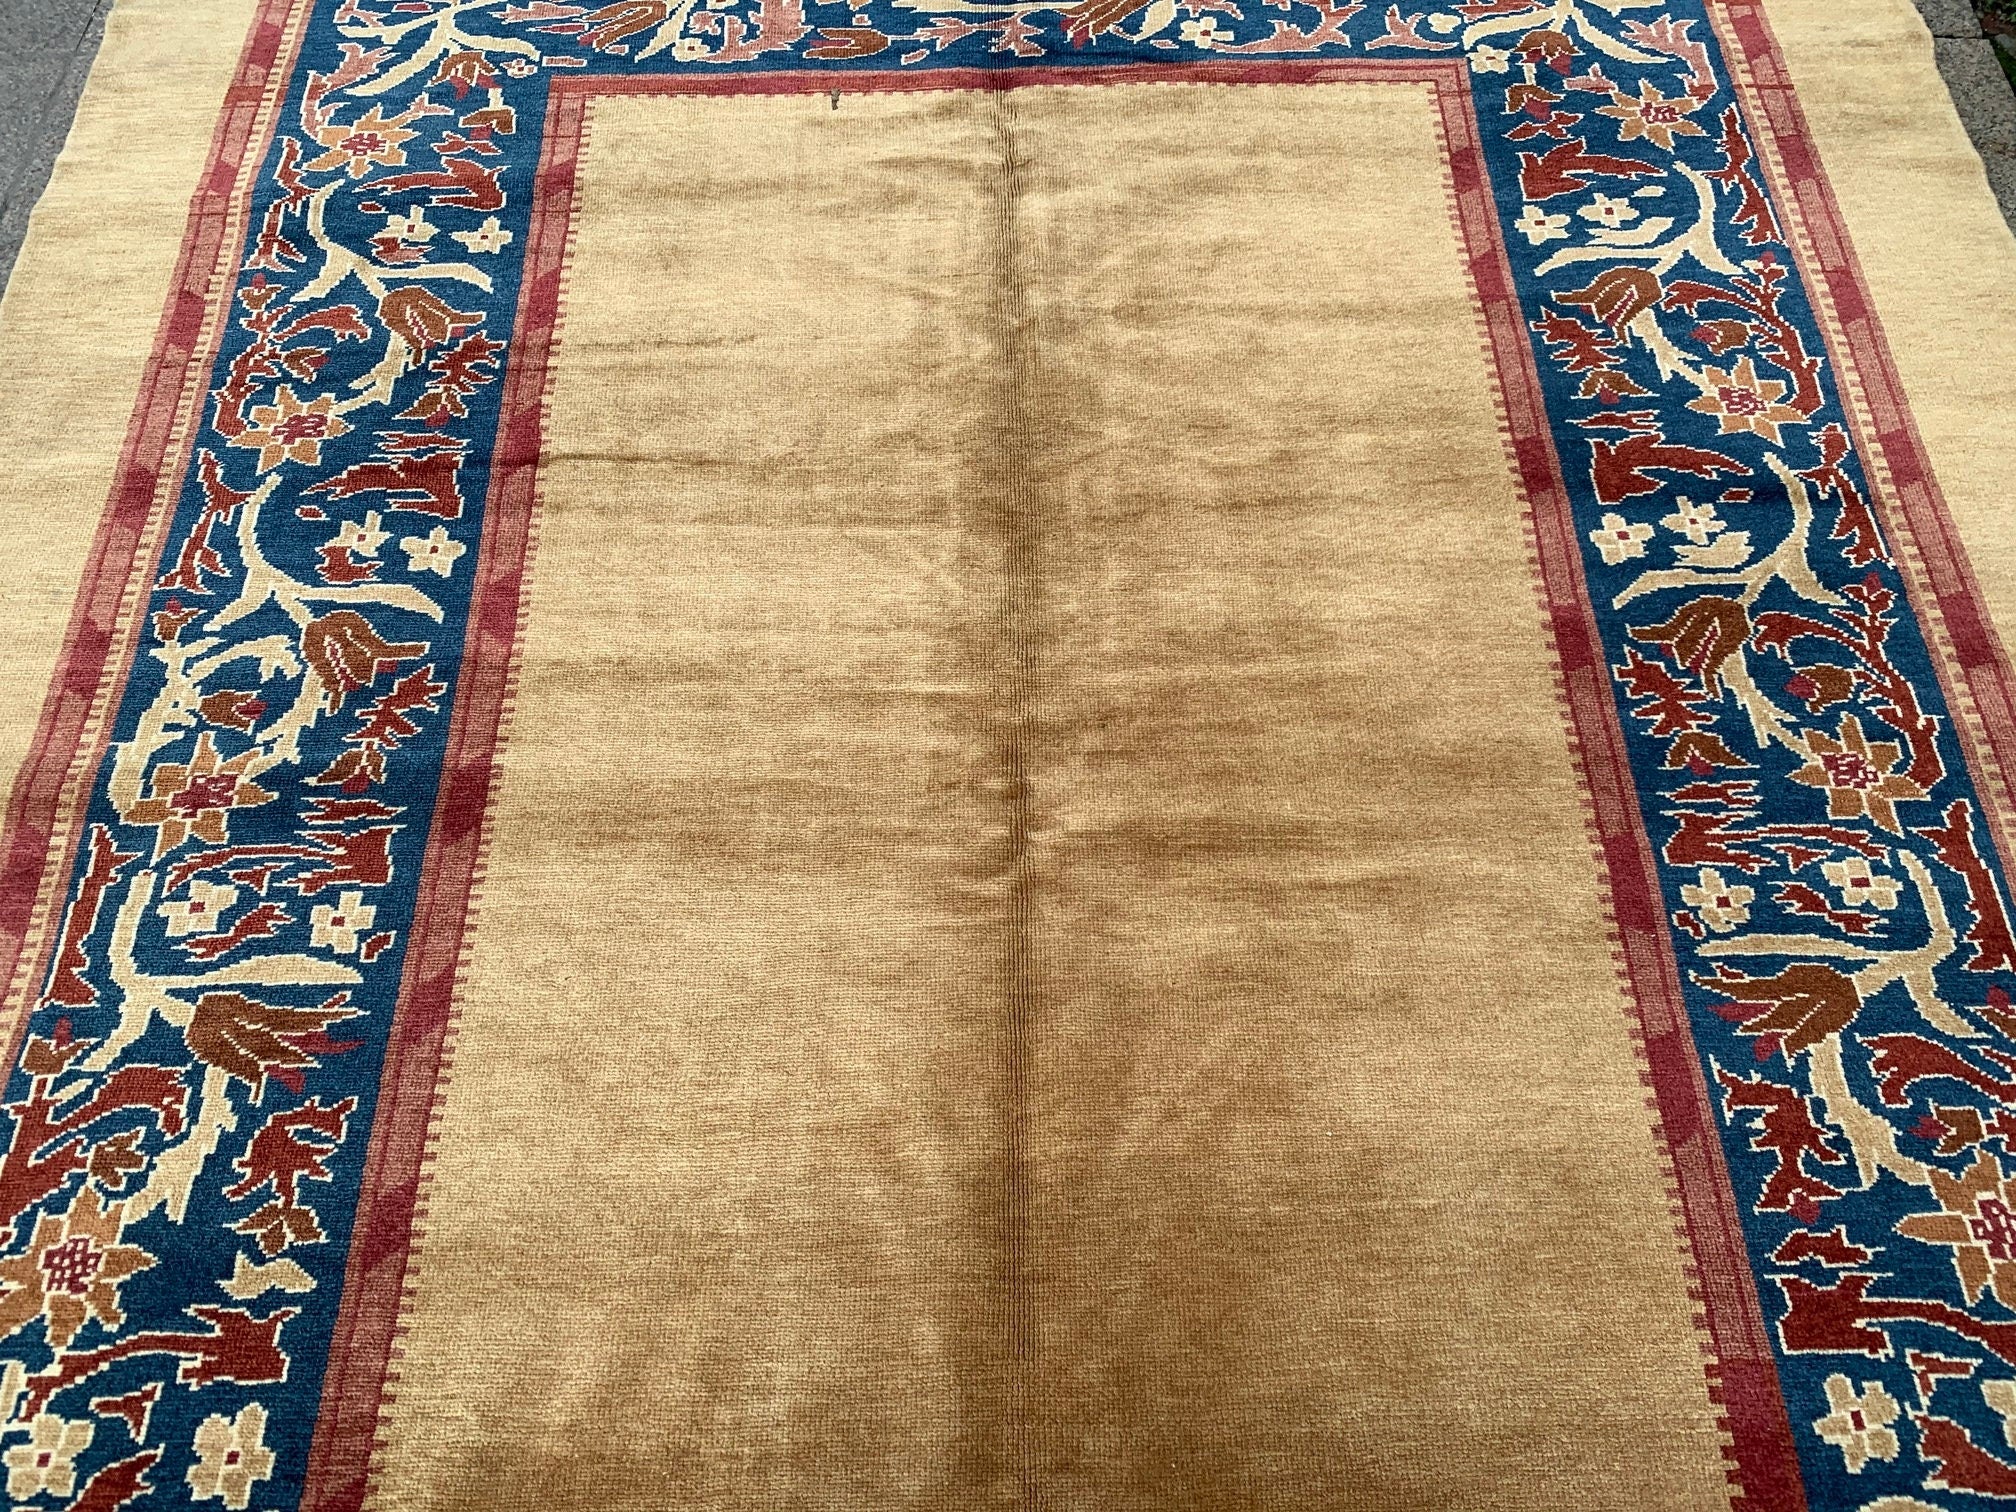 Large Turkish carpet, 7.1x9.7 ft, IM844